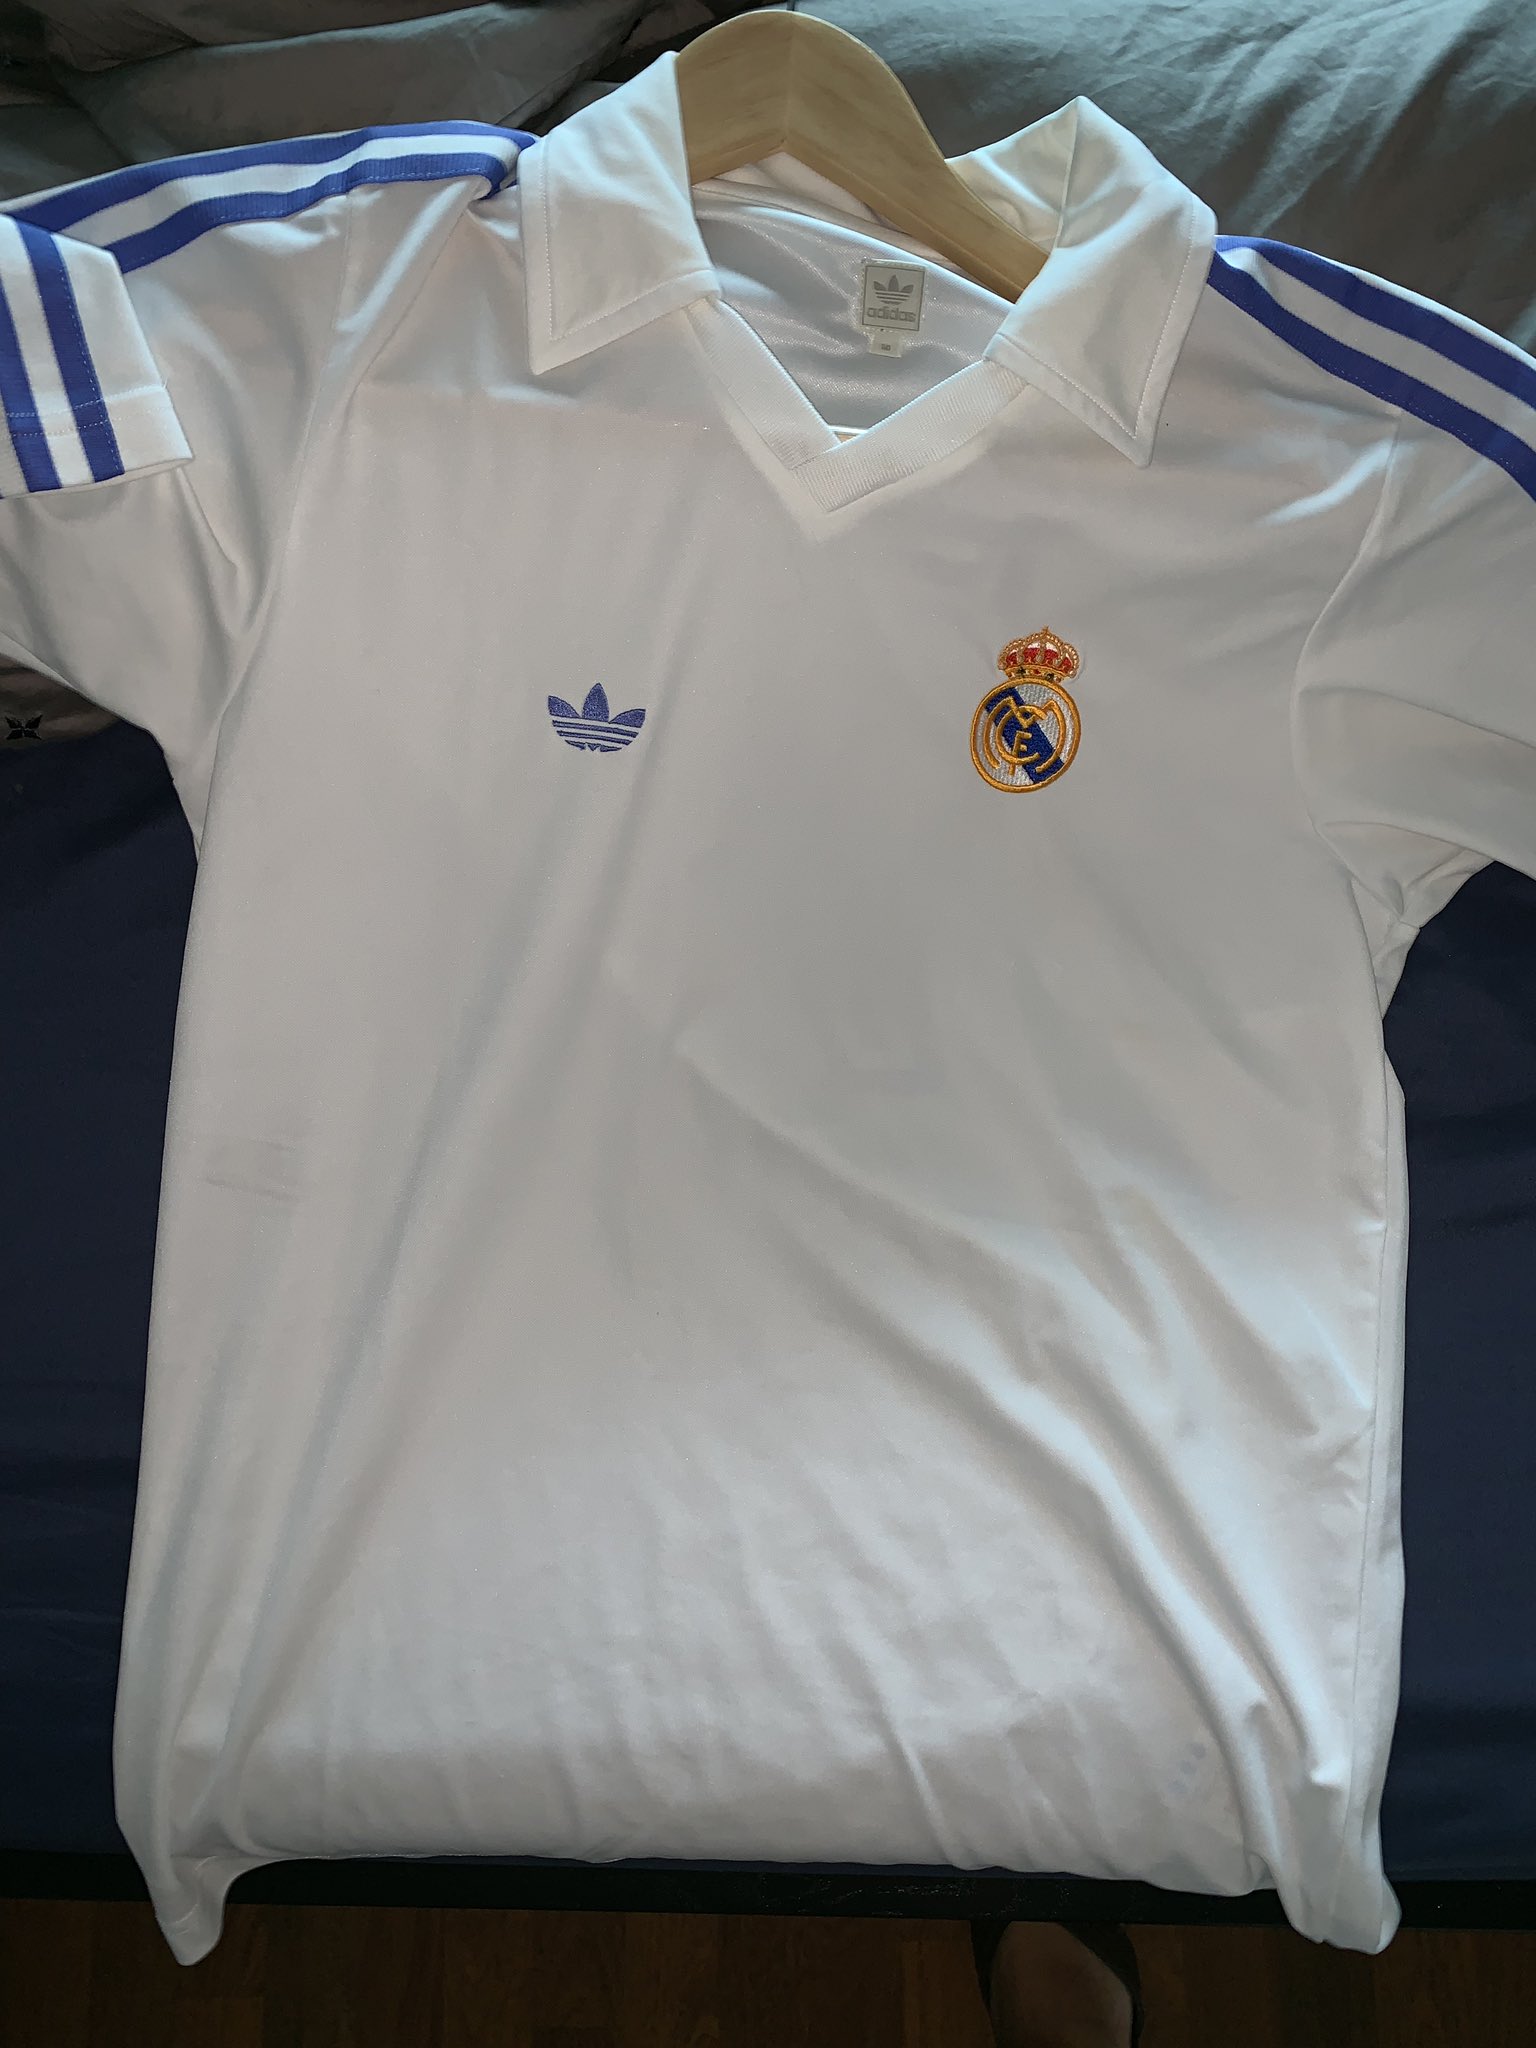 Degenerar vestir Centro comercial Rancoma on Twitter: "Adidas sacó a la venta en 2003 esta camiseta retro del Real  Madrid. Era casi idéntica a la de la época de Zanussi salvo en el detalle  de que